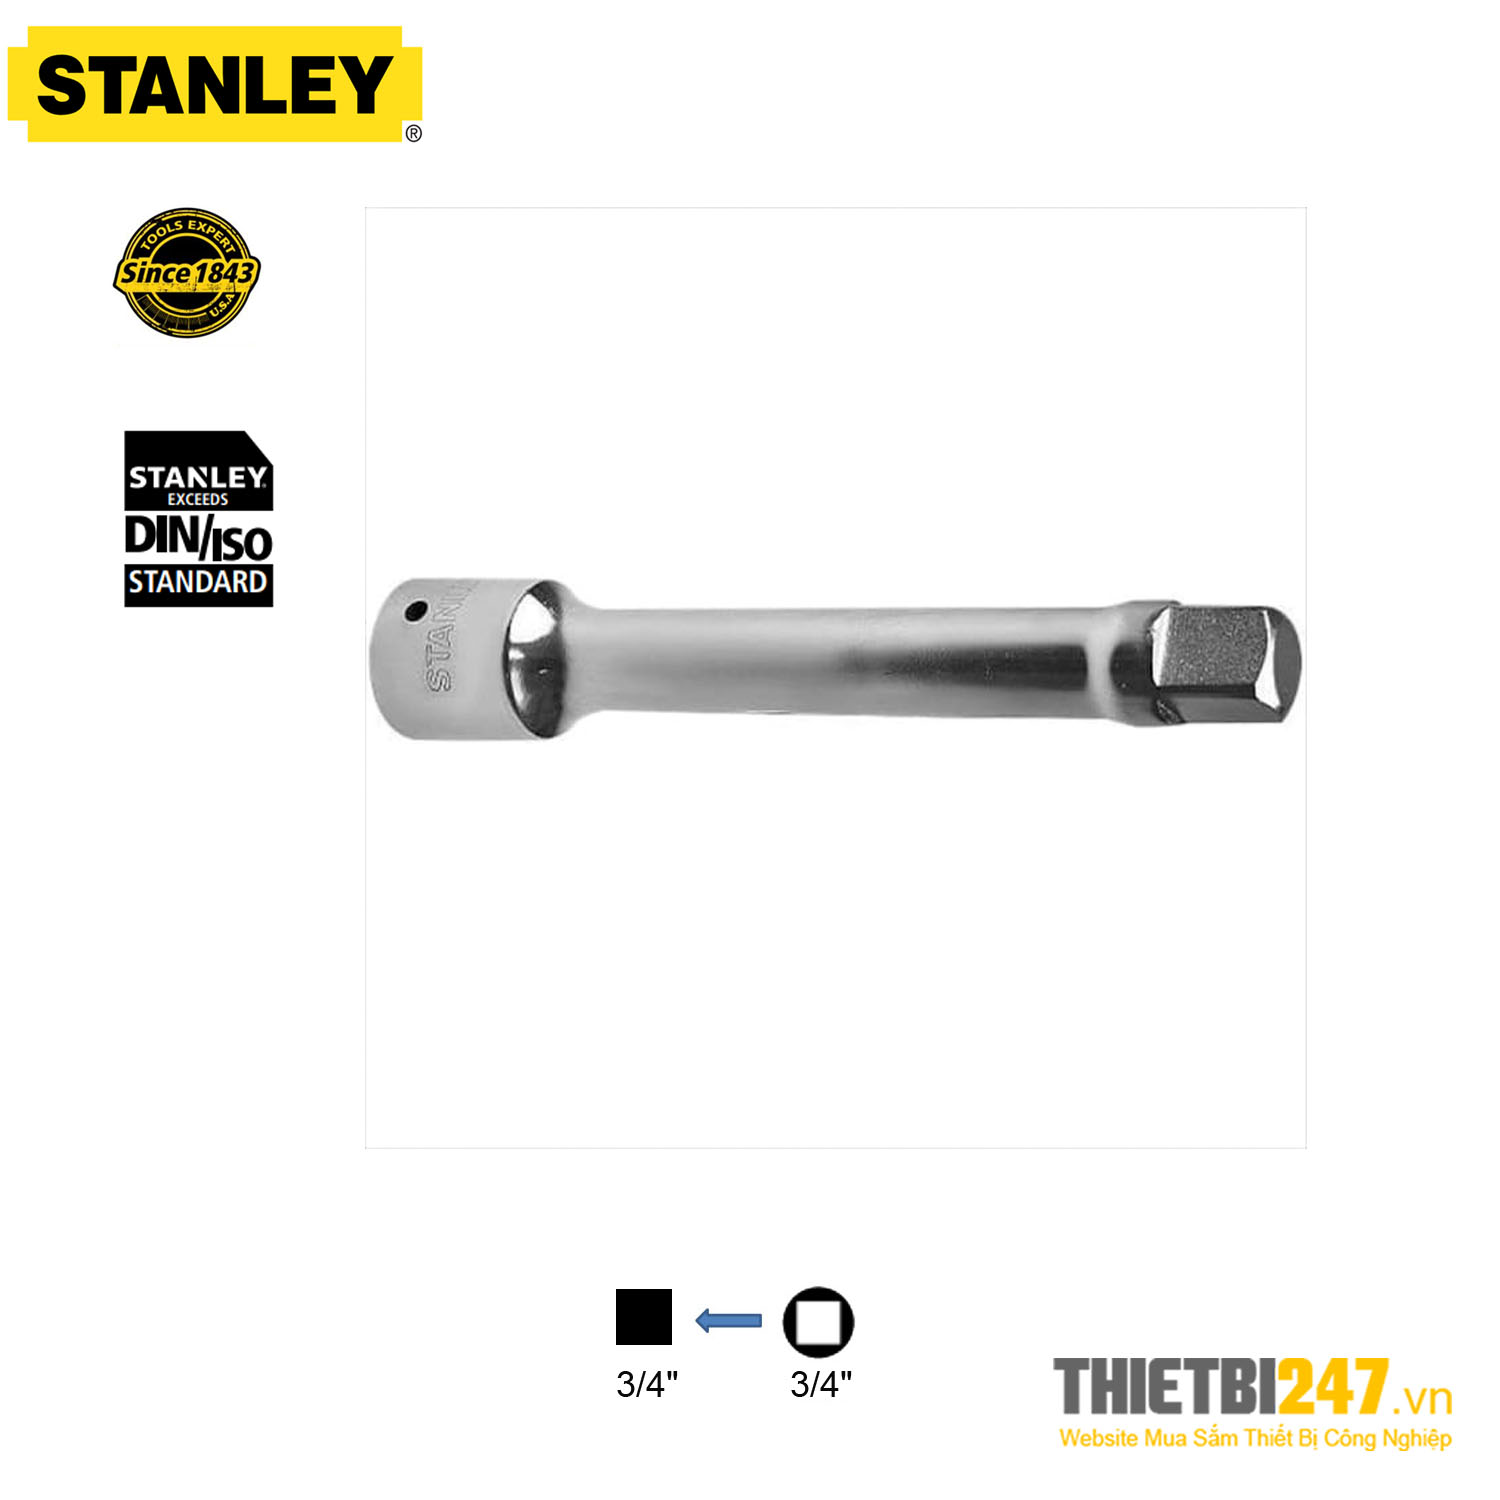 Cần nối dài tuýp 3/4" Stanley STMT89306-8B 100mm, STMT89307-8B 200mm